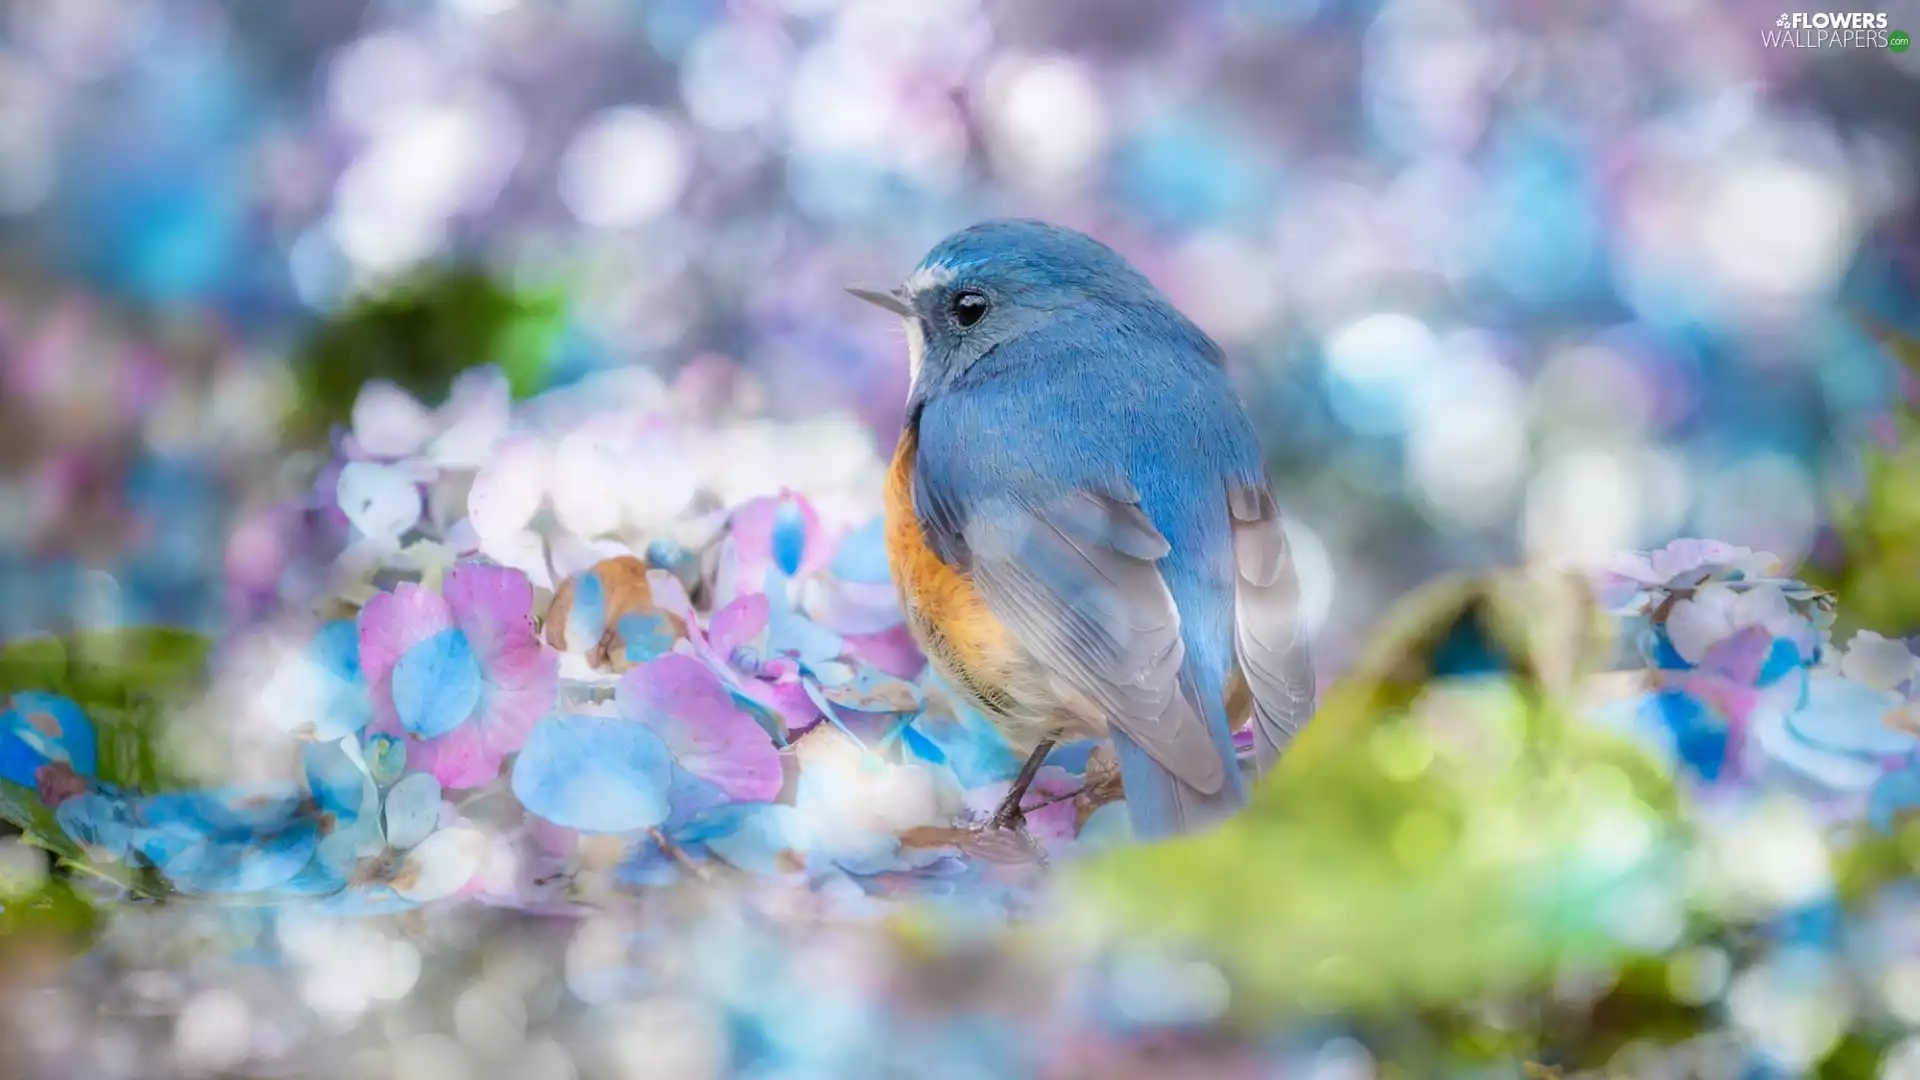 hydrangea, blur, Red-flanked Bluetail, Flowers, Bird